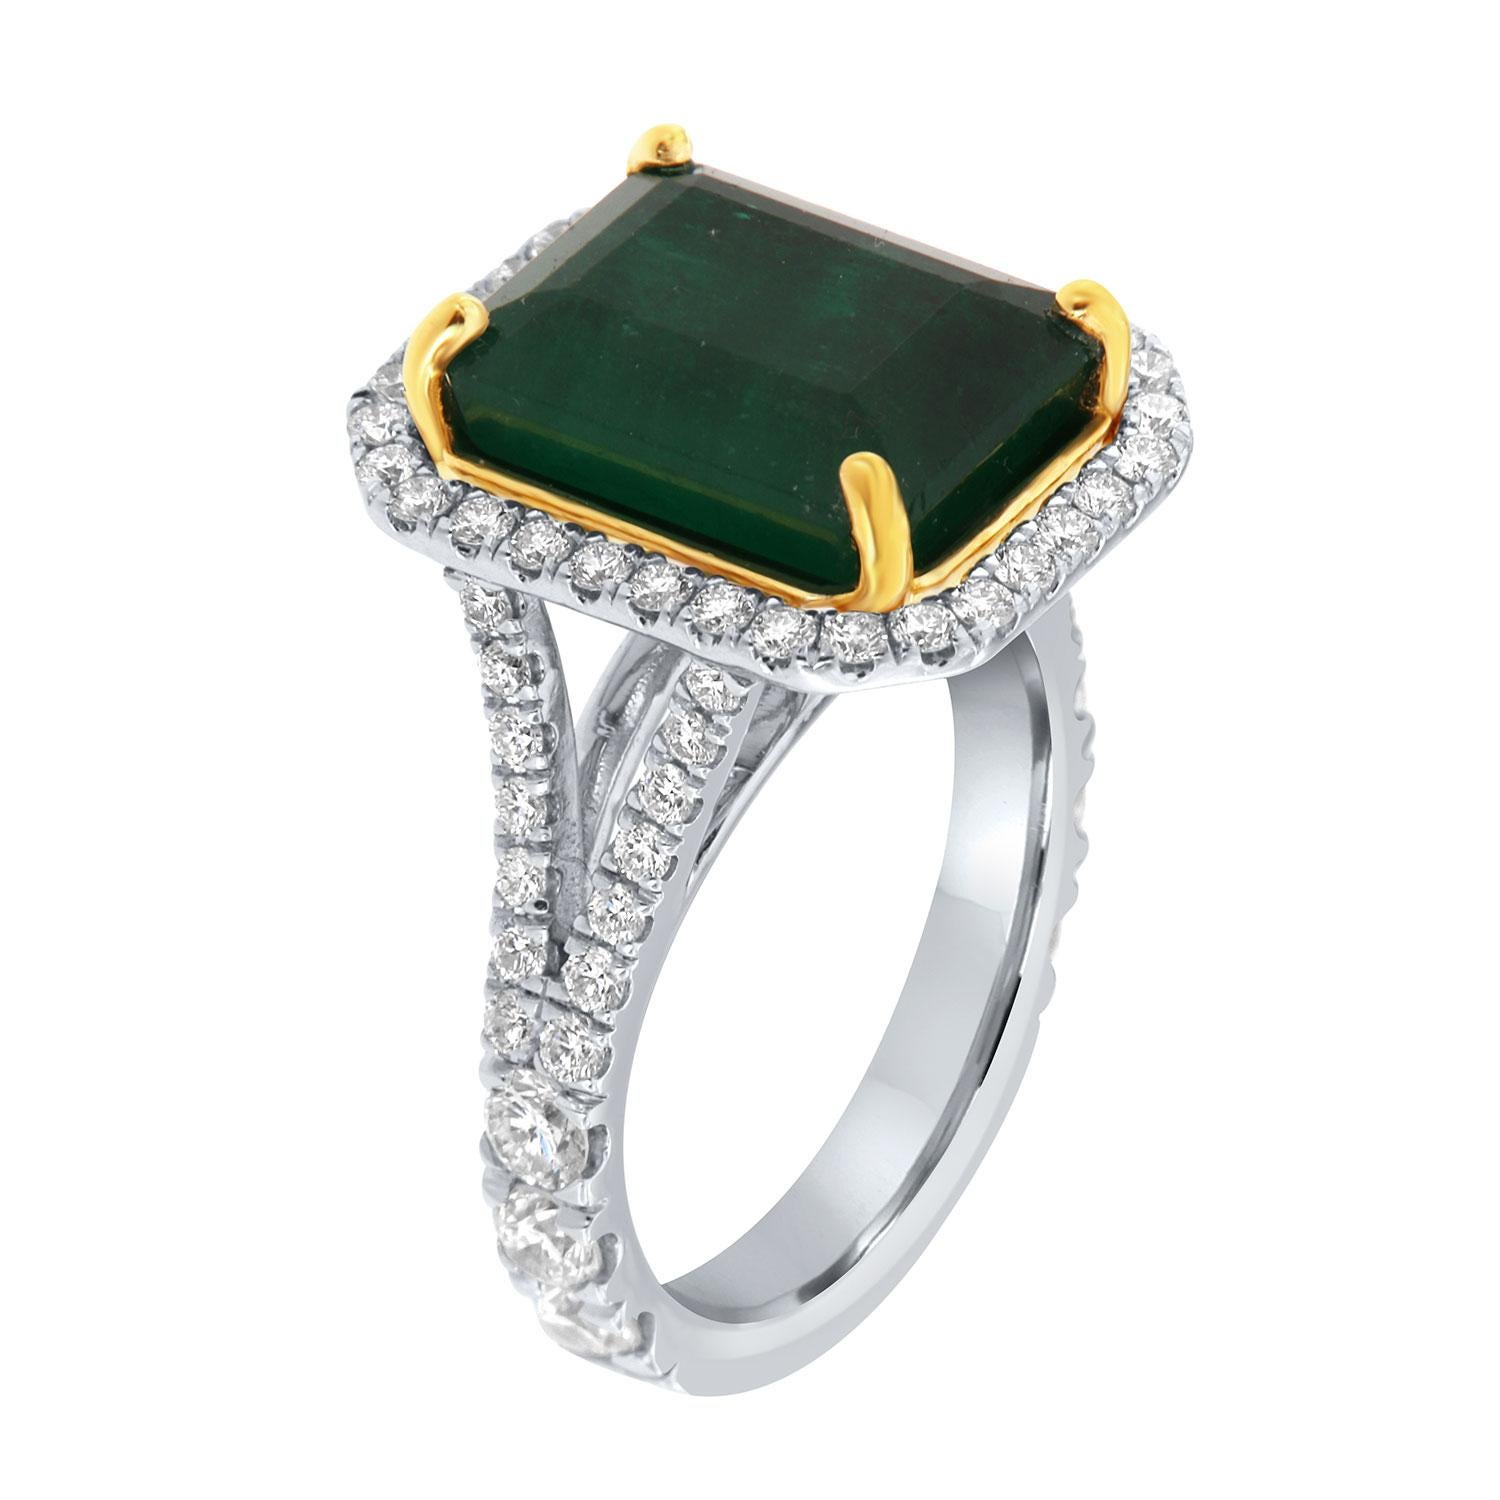 Cette bague en or blanc et jaune 18 carats est ornée d'une émeraude verte naturelle de 6,82 carats provenant de Zambie. Il est entouré d'un halo de diamants ronds brillants sur un anneau à tige fendue de 3,5 mm de large. Les diamants sont sertis sur